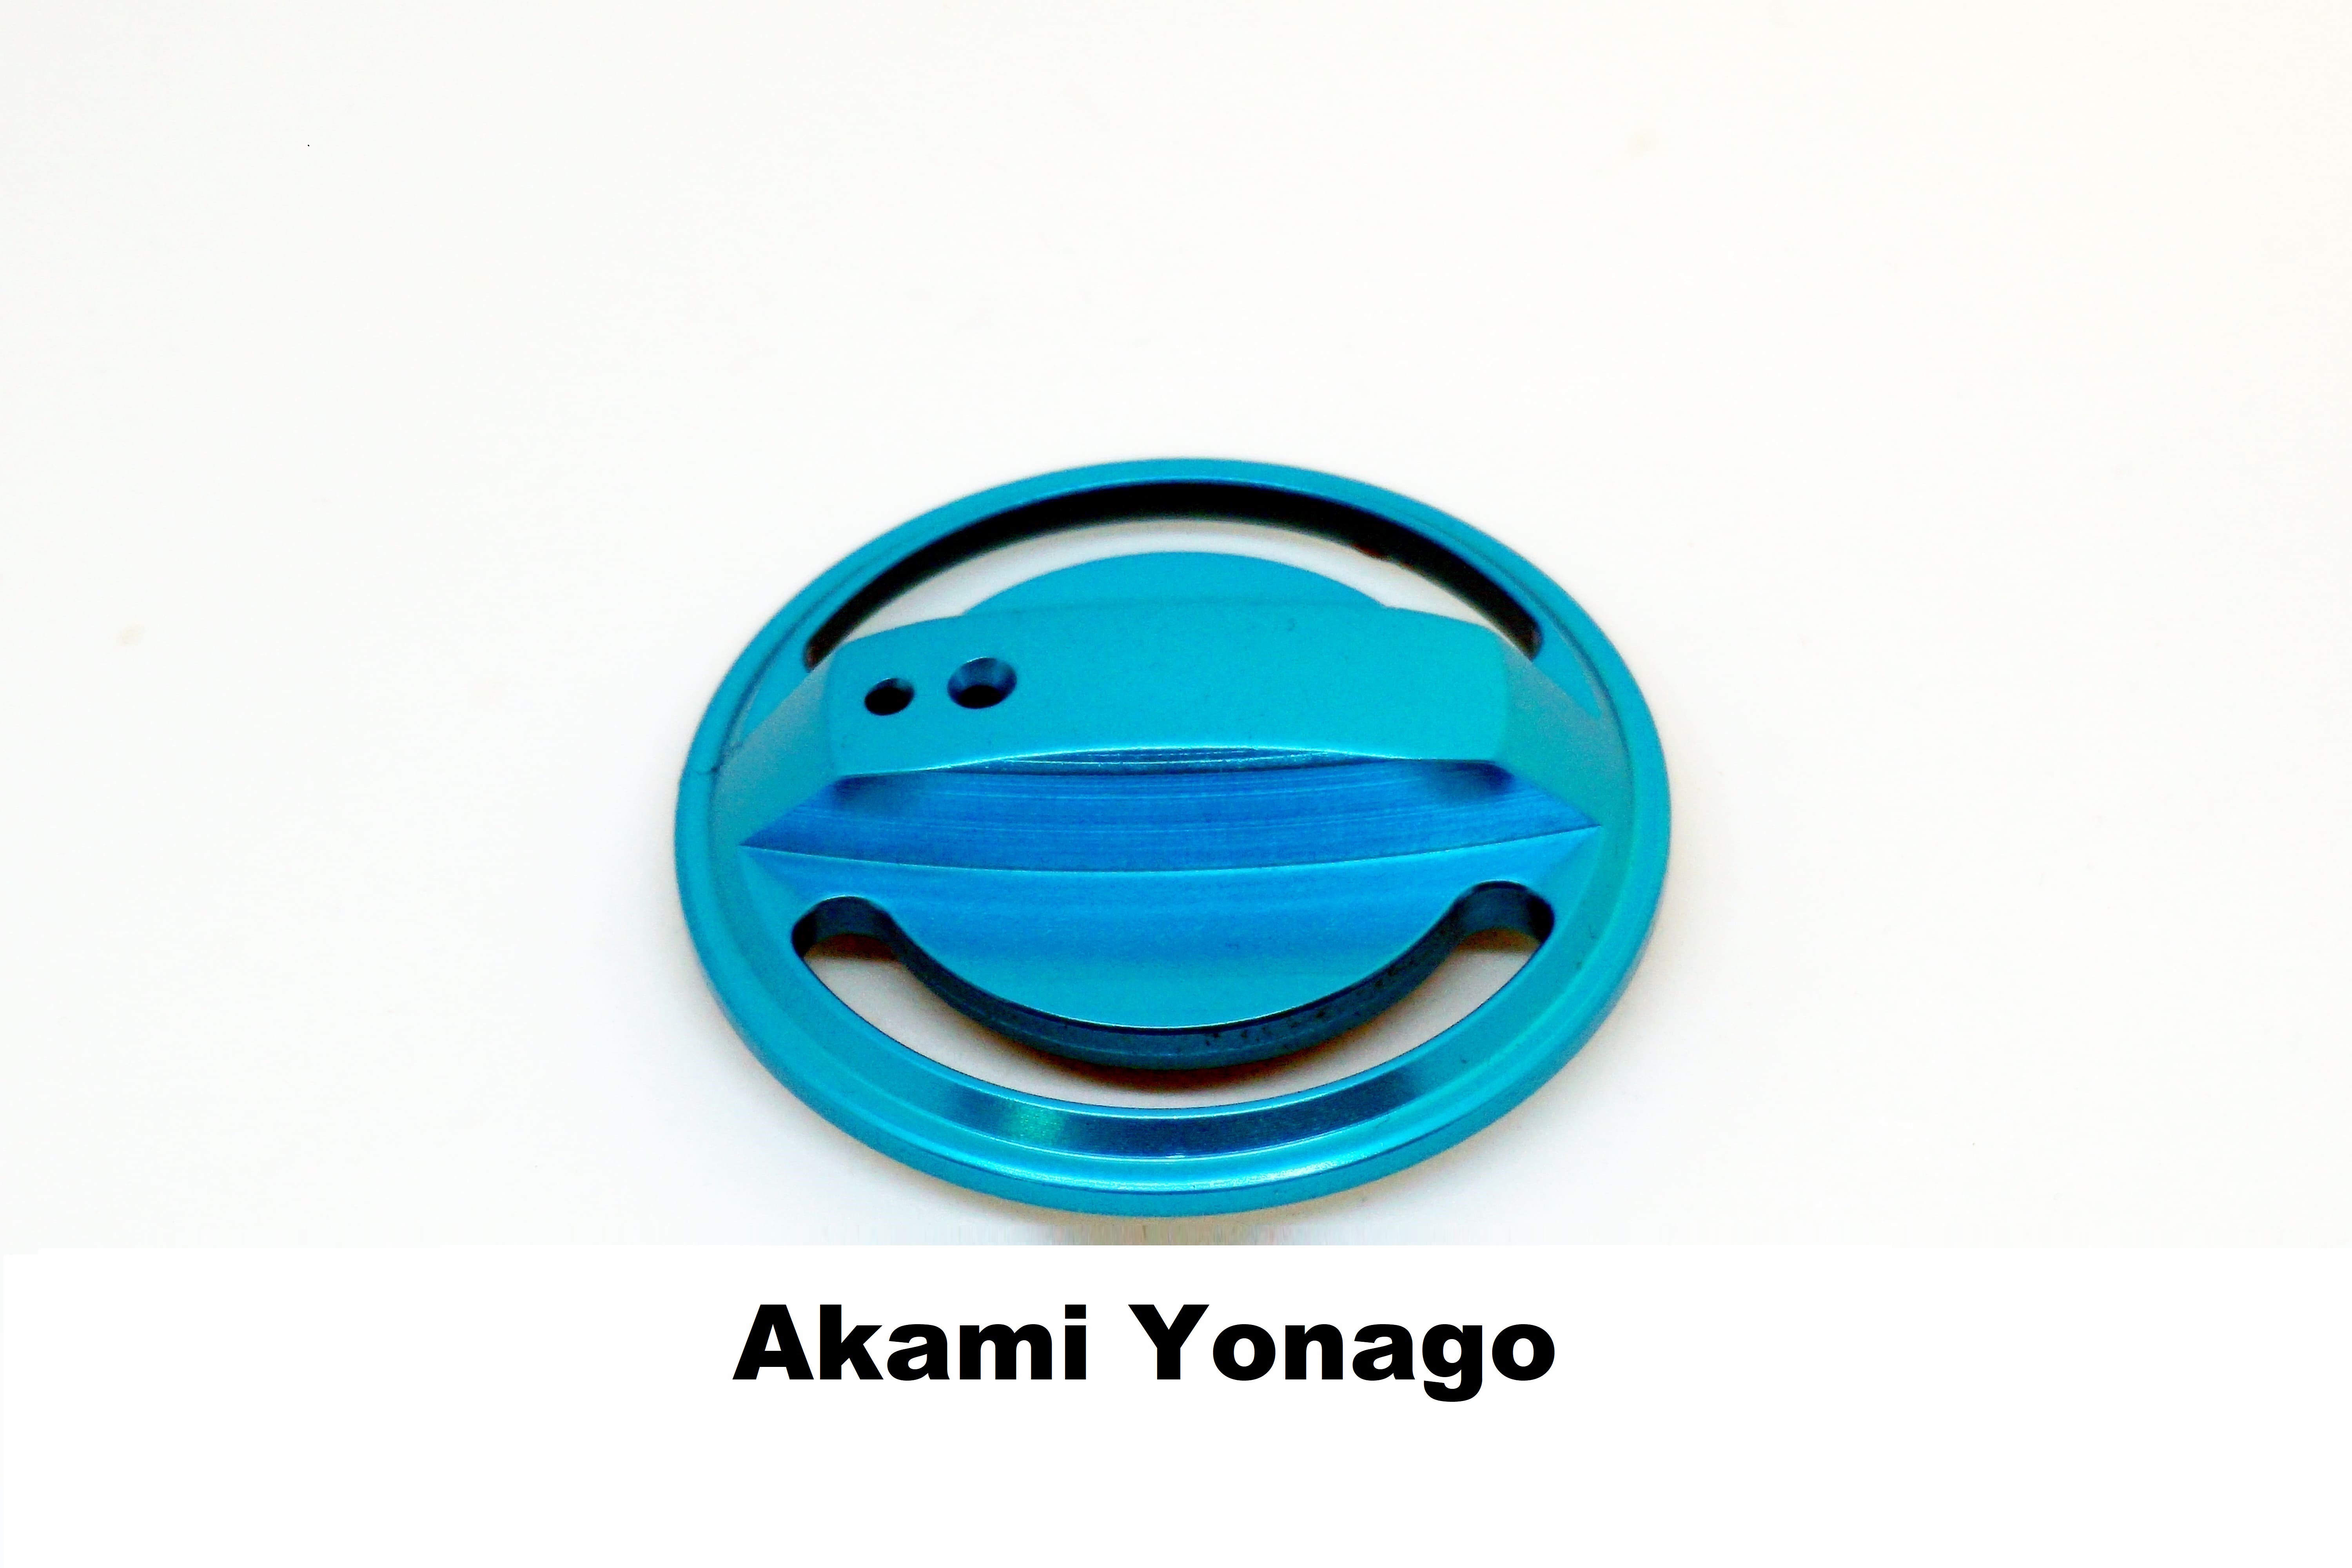 Tapón de Freno Akami Yonago